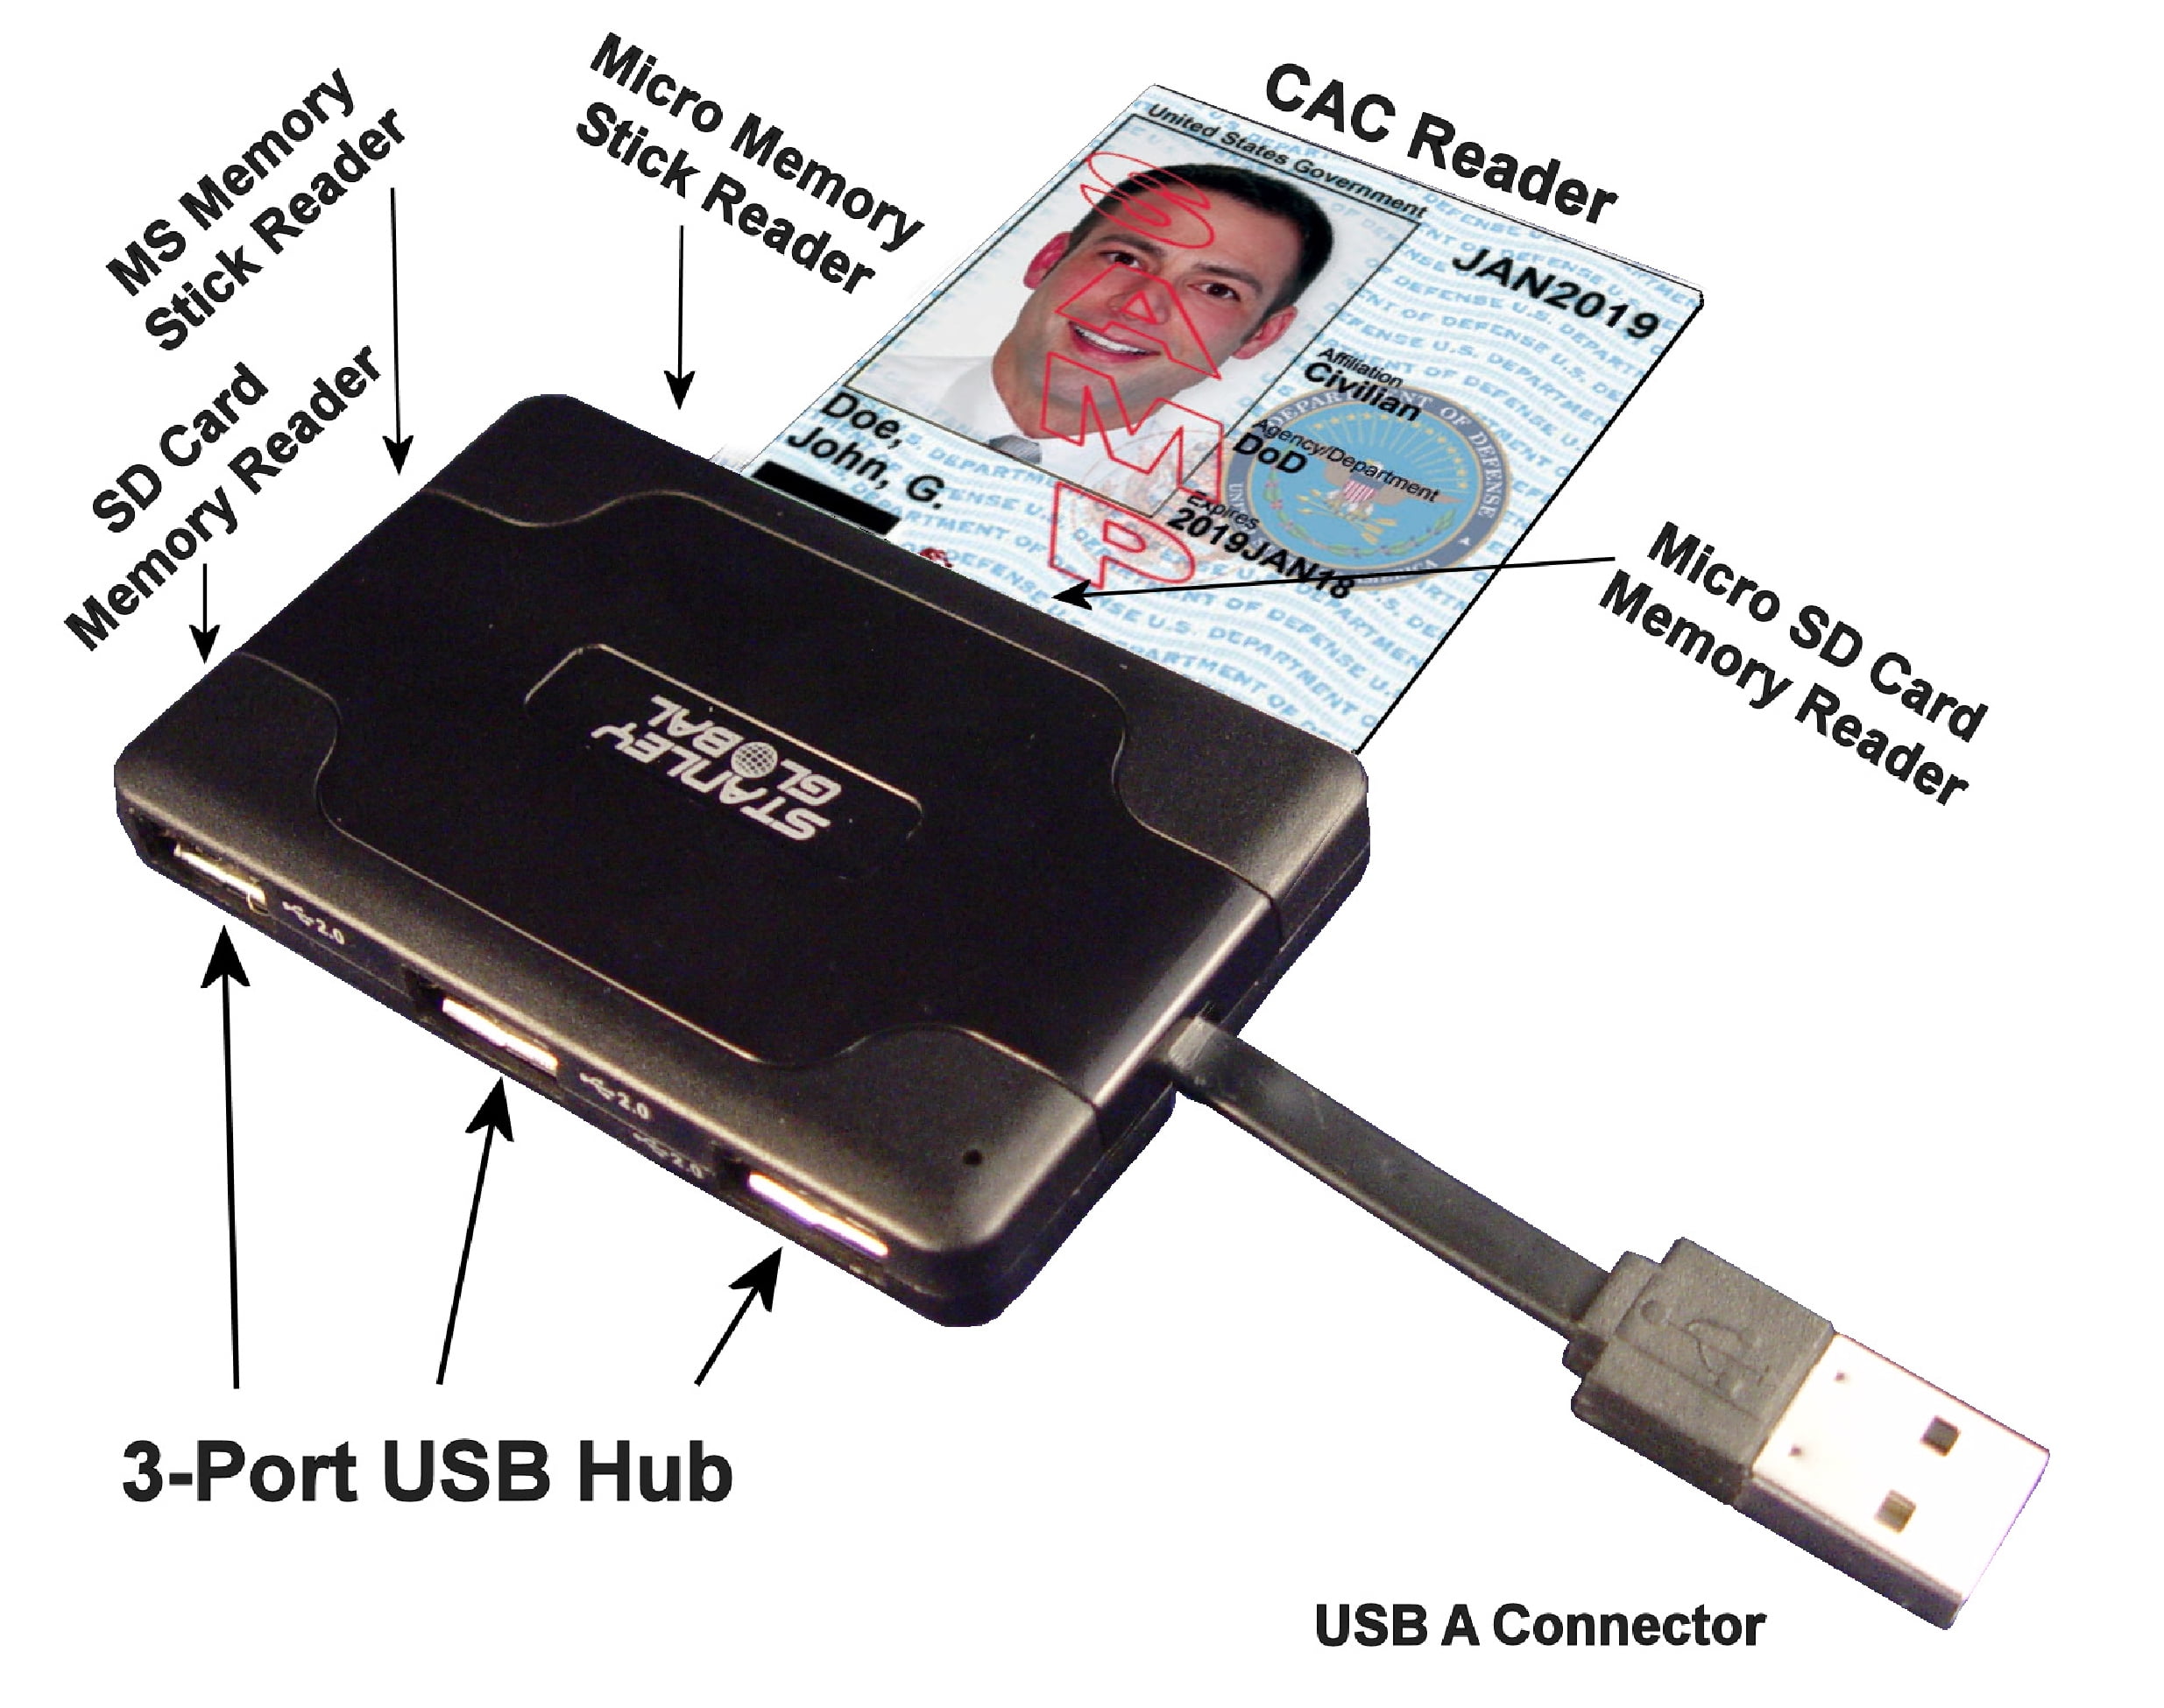 Смарт sim картой. Смарт карта USB. Смарт карт ридер. Слот для считывания смарт-карт. USB Reader.